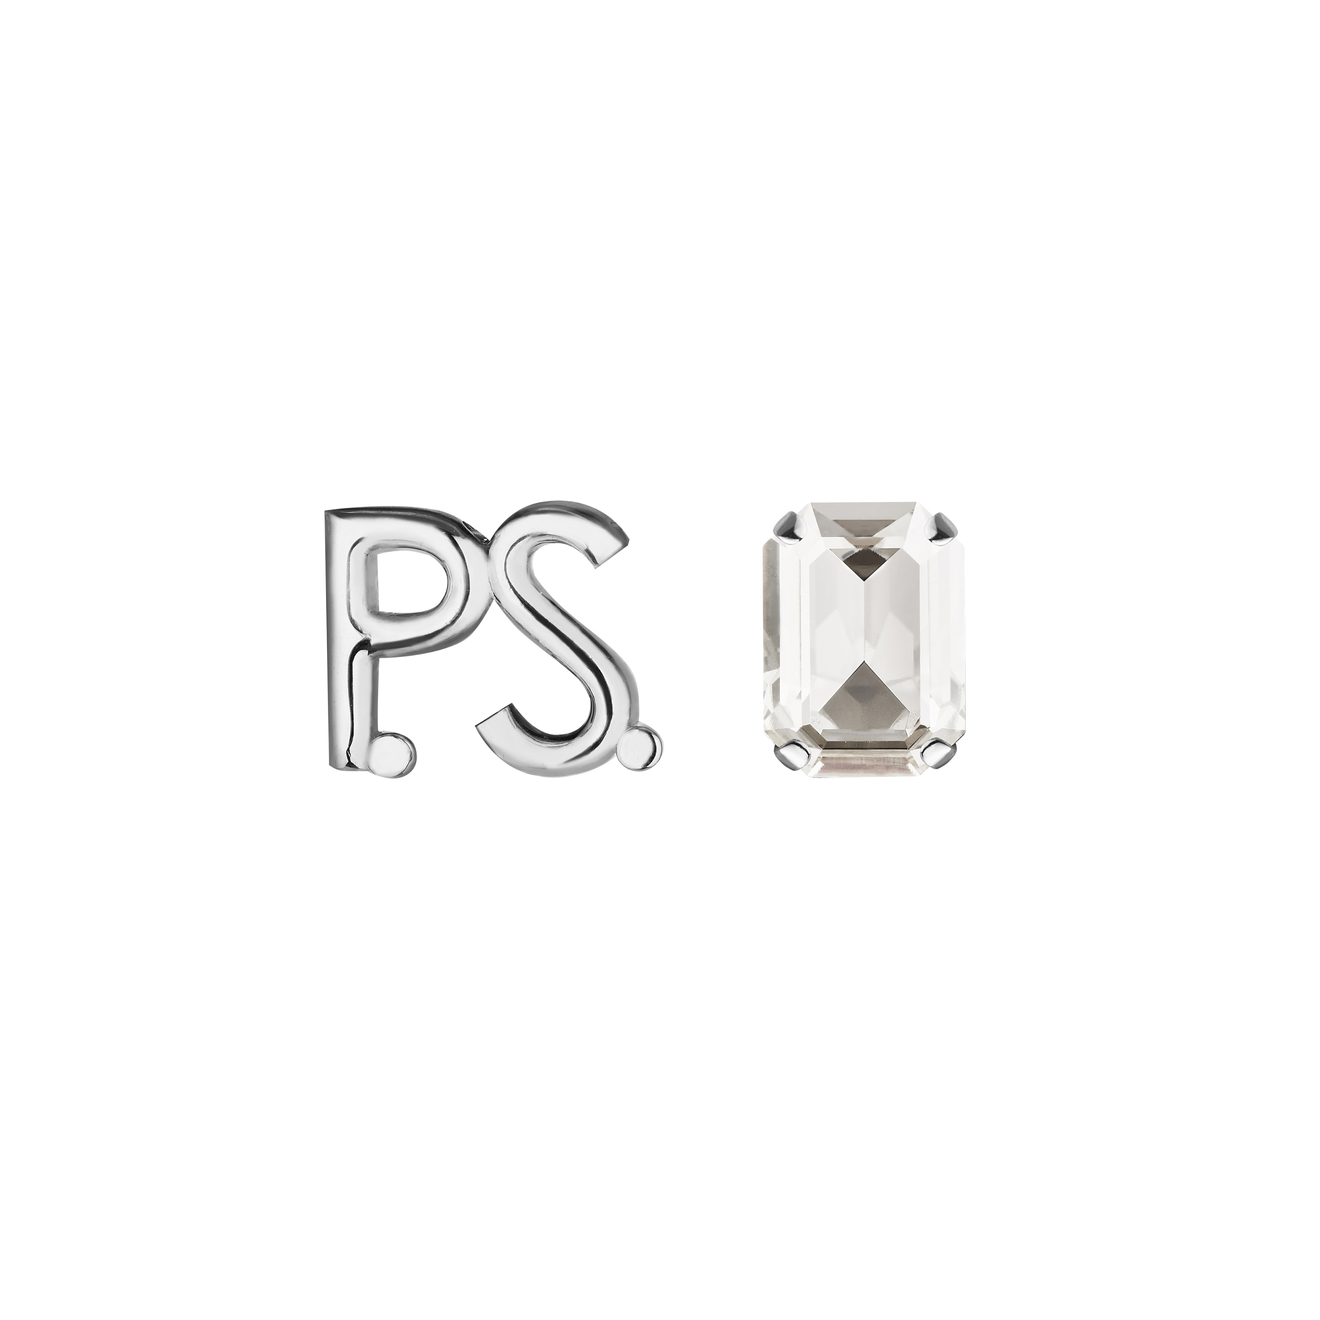 Phenomenal Studio Серьги с фирменным логотипом и крупным кристаллом P.S. Crystal Rhodium phenomenal studio родированный кафф с голубыми кристаллами water cuff rhodium